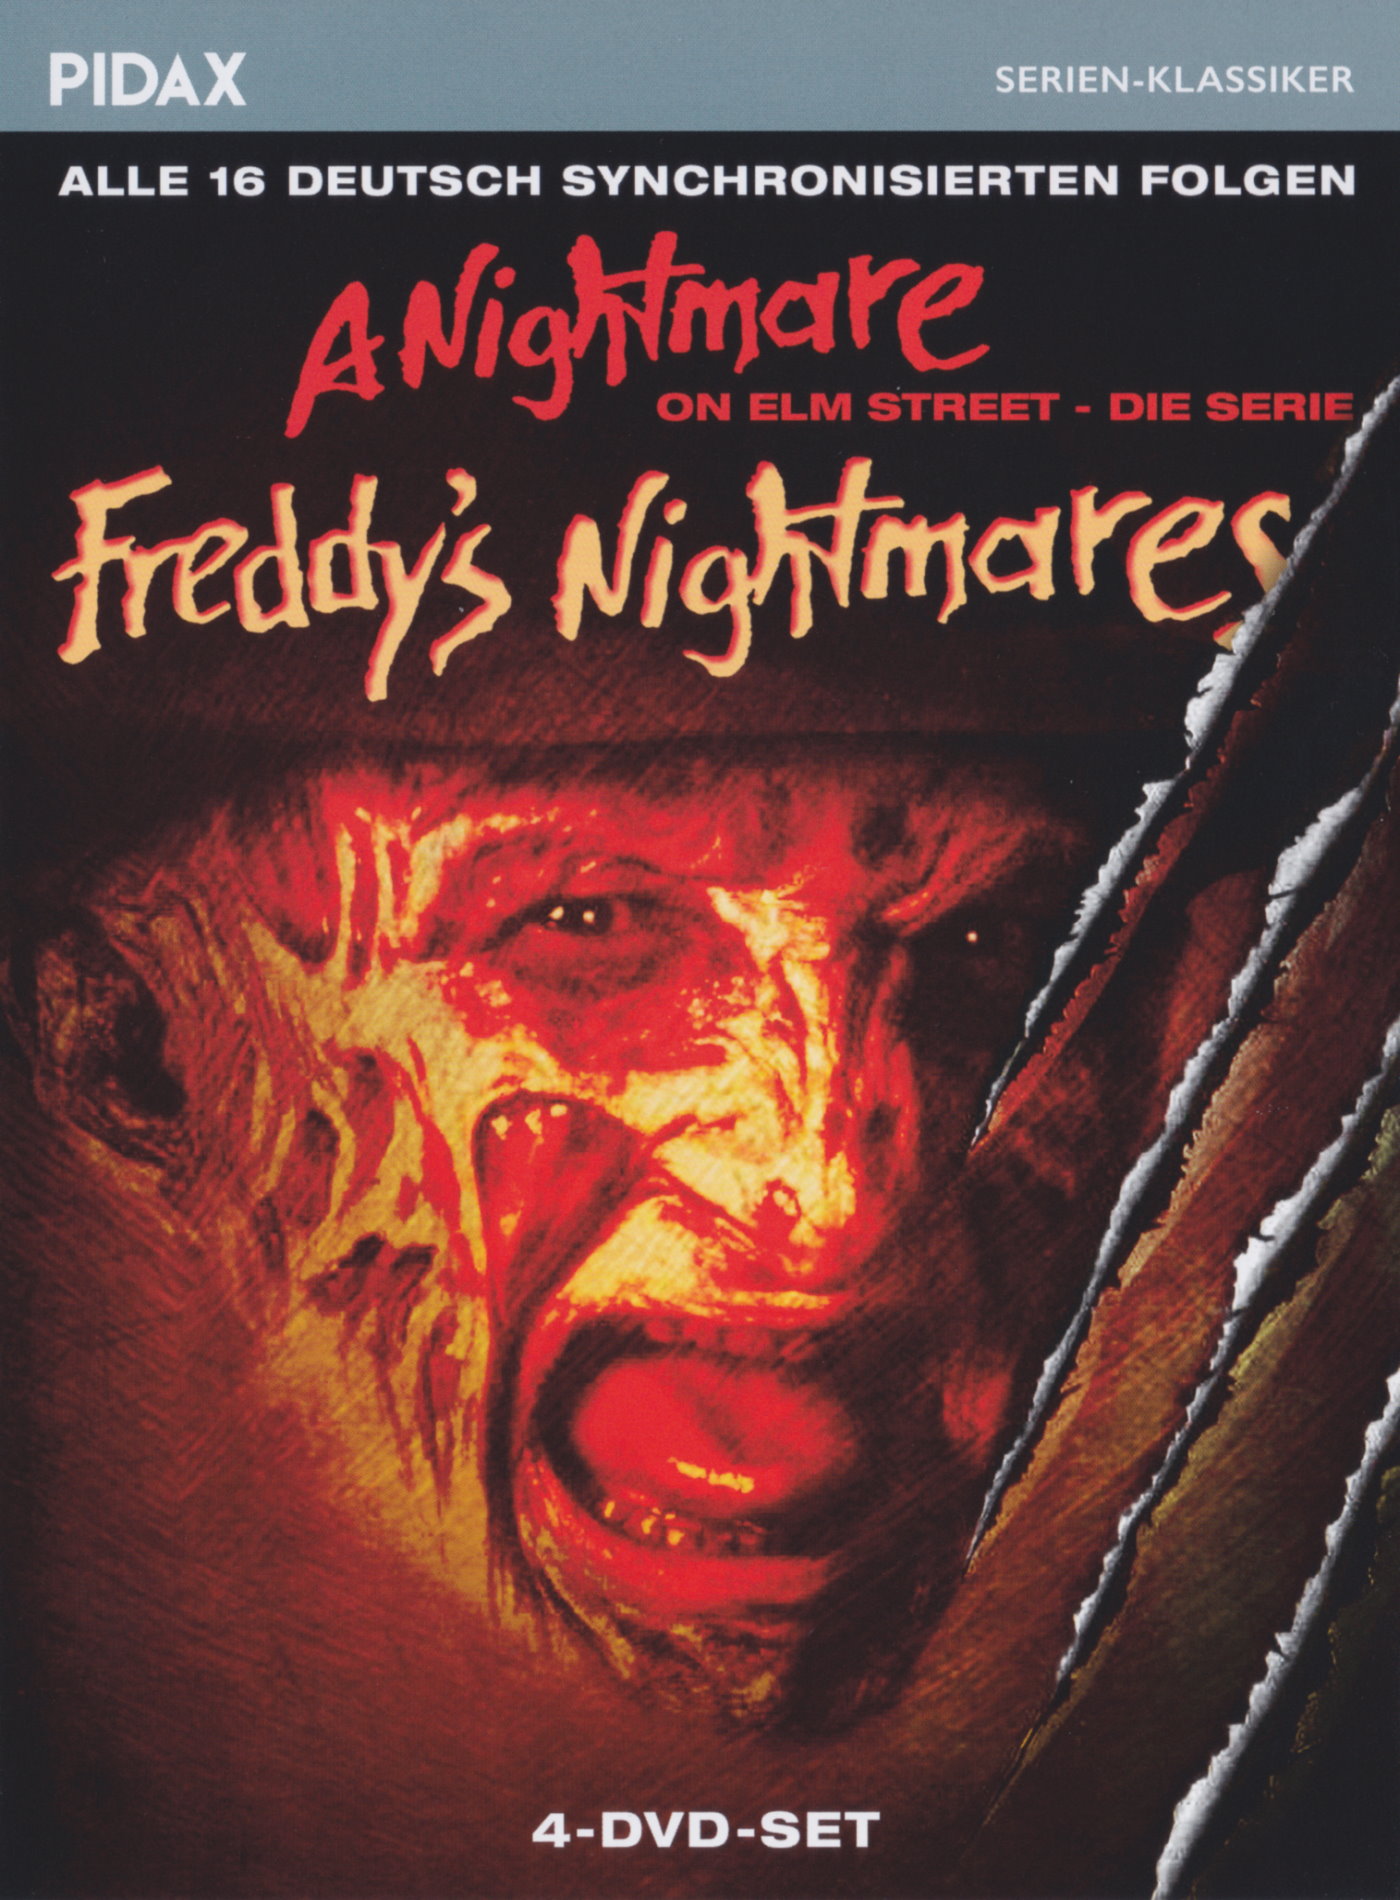 Cover - Freddy's Nightmares: A Nightmare on Elm Street - Die Serie.jpg